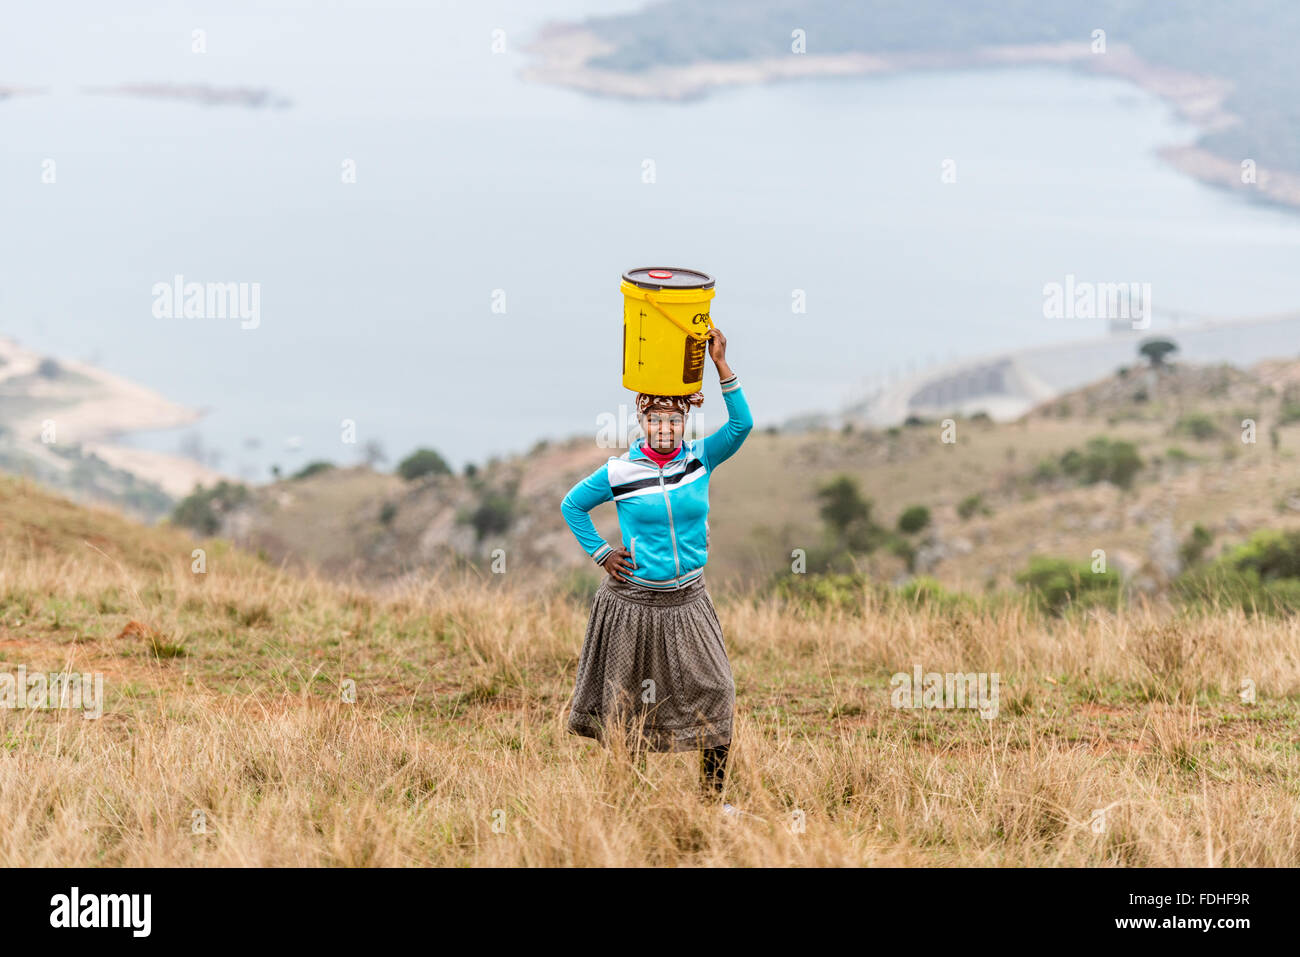 Frau mit einem Eimer auf dem Kopf in der Hhohho Region von Swasiland, Afrika. Stockfoto